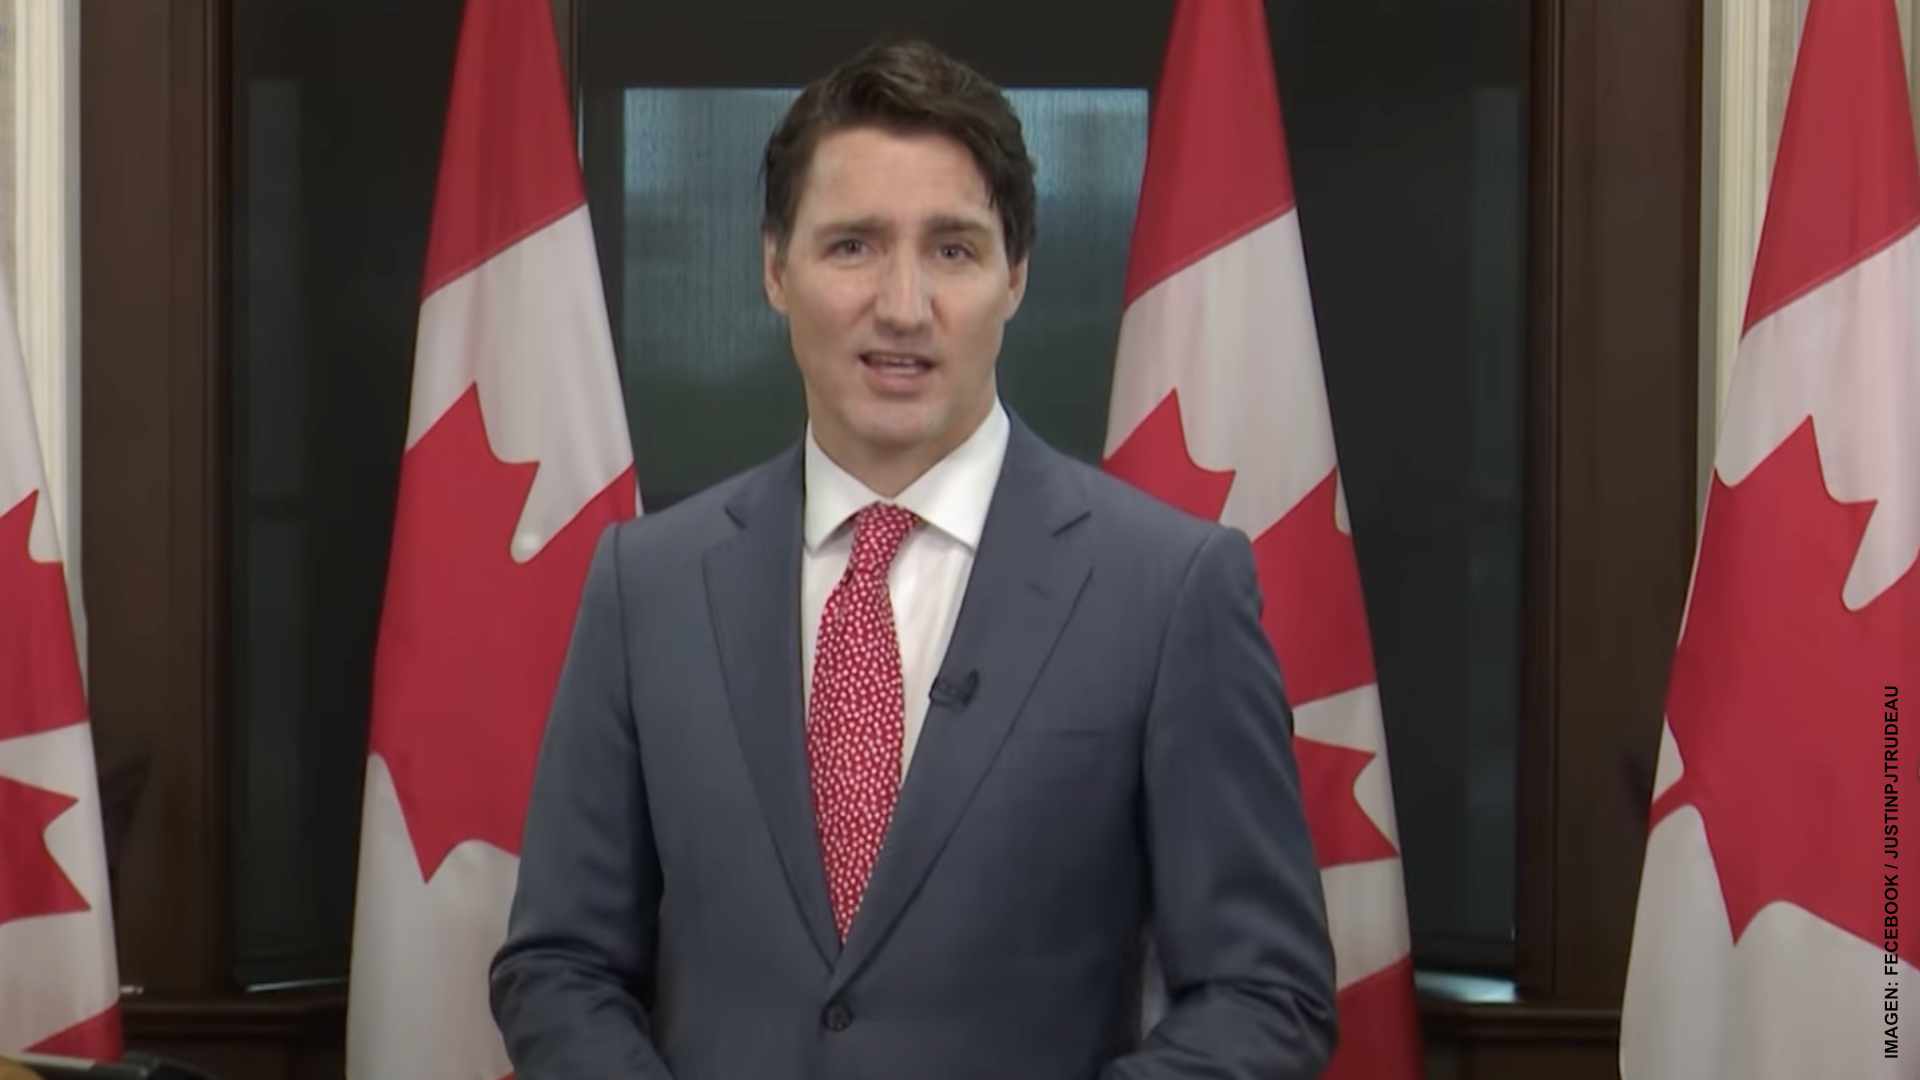 Mensaje moderado de Trudeau en el Día de Canadá